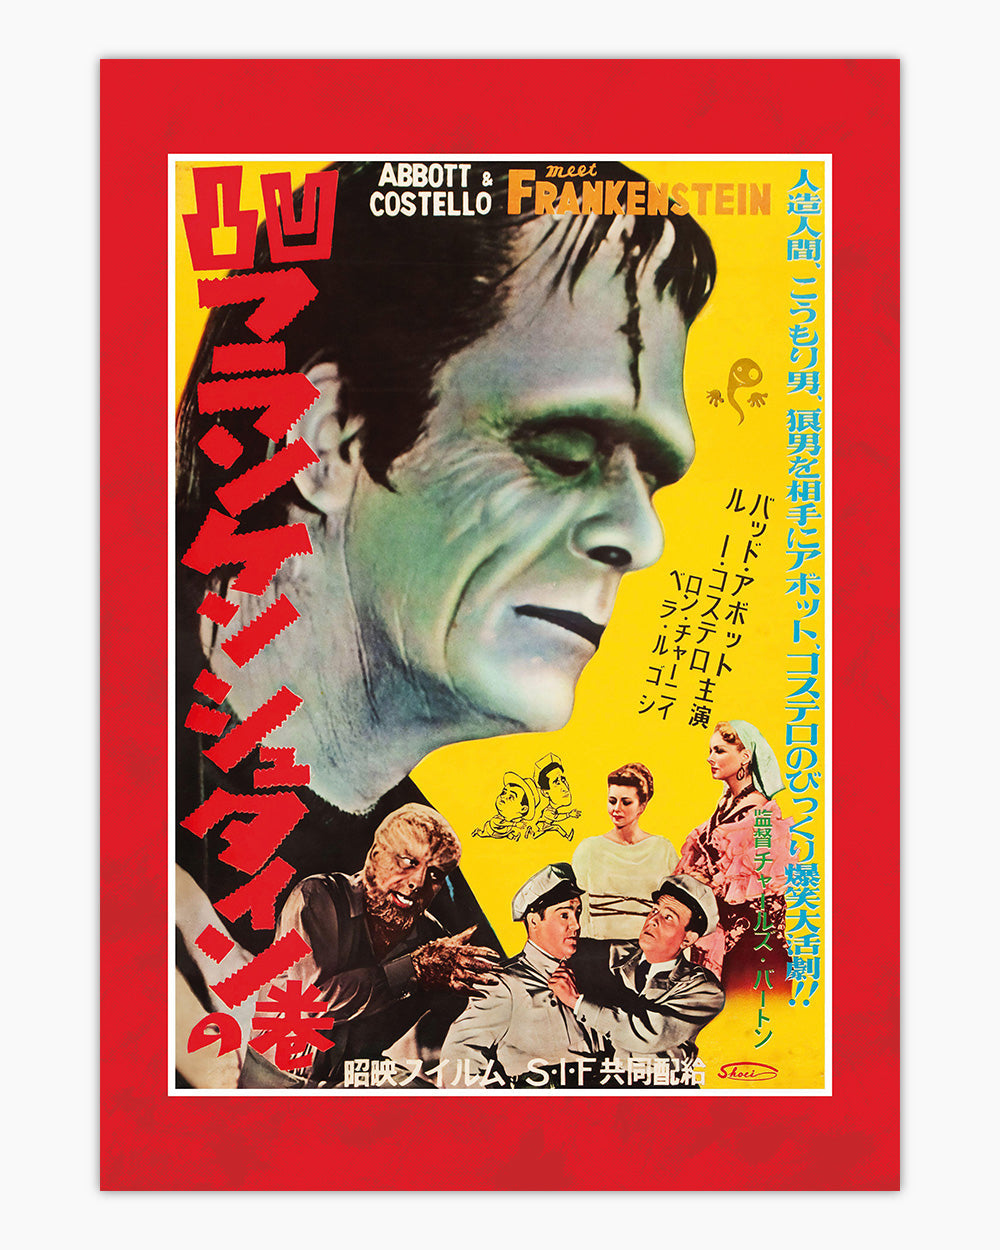 Abbott And Costello Frankenstein Art Print | Wall Art